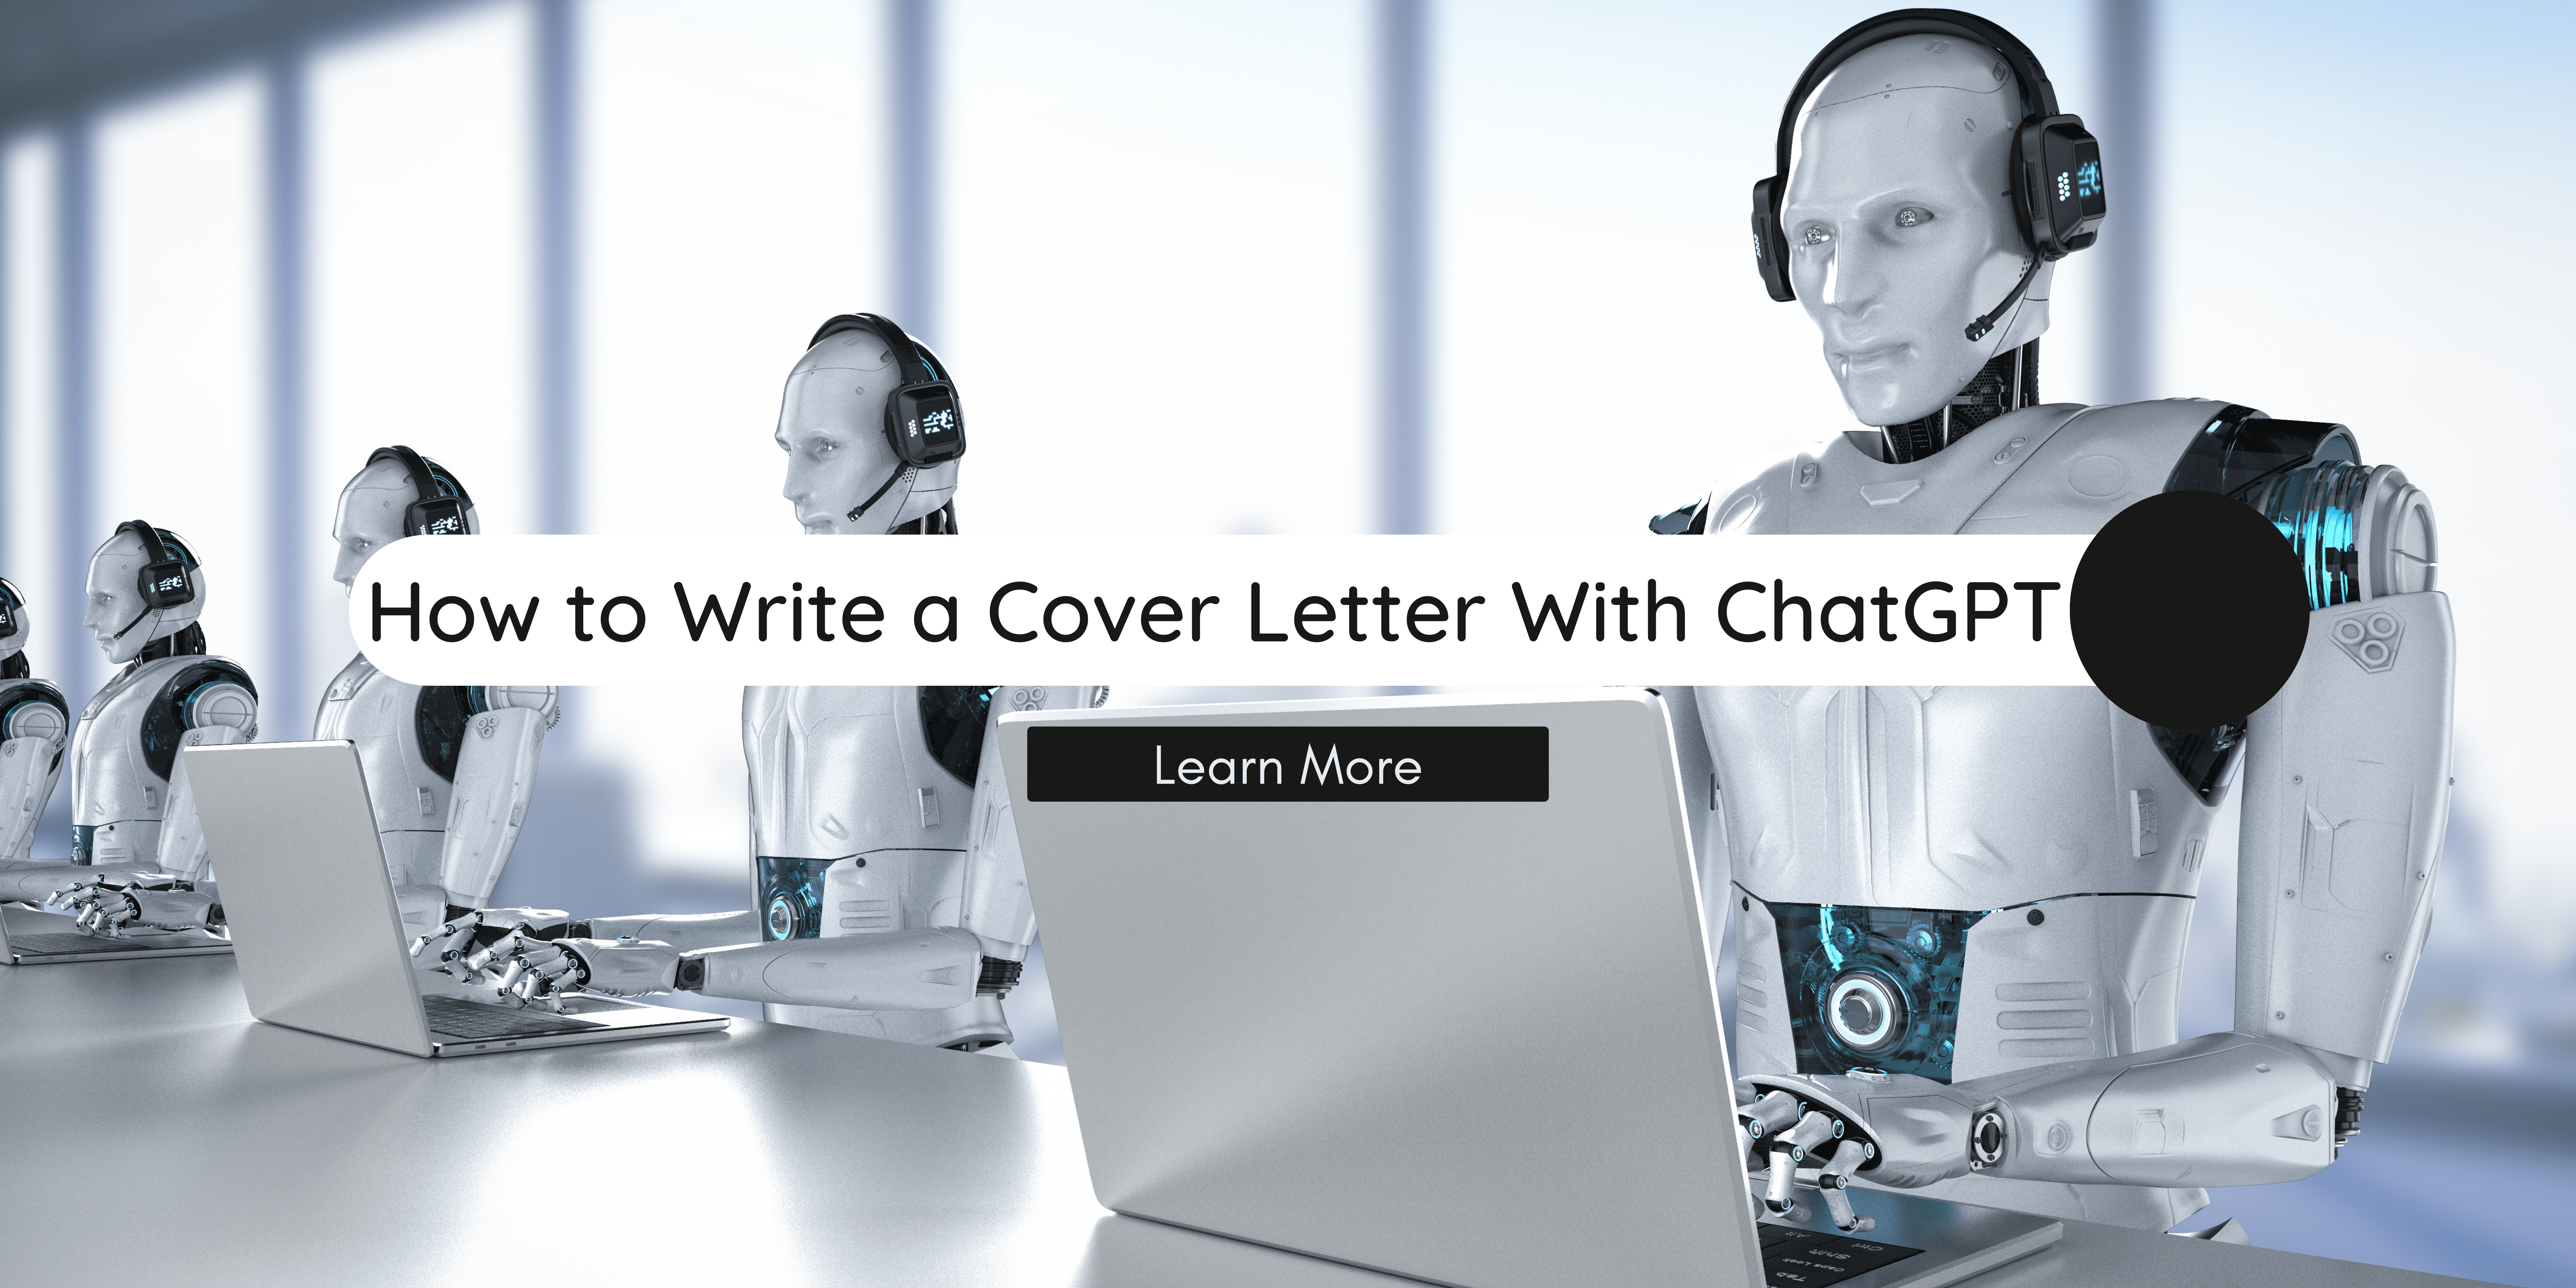 Як написати супровідний лист за допомогою ChatGPT